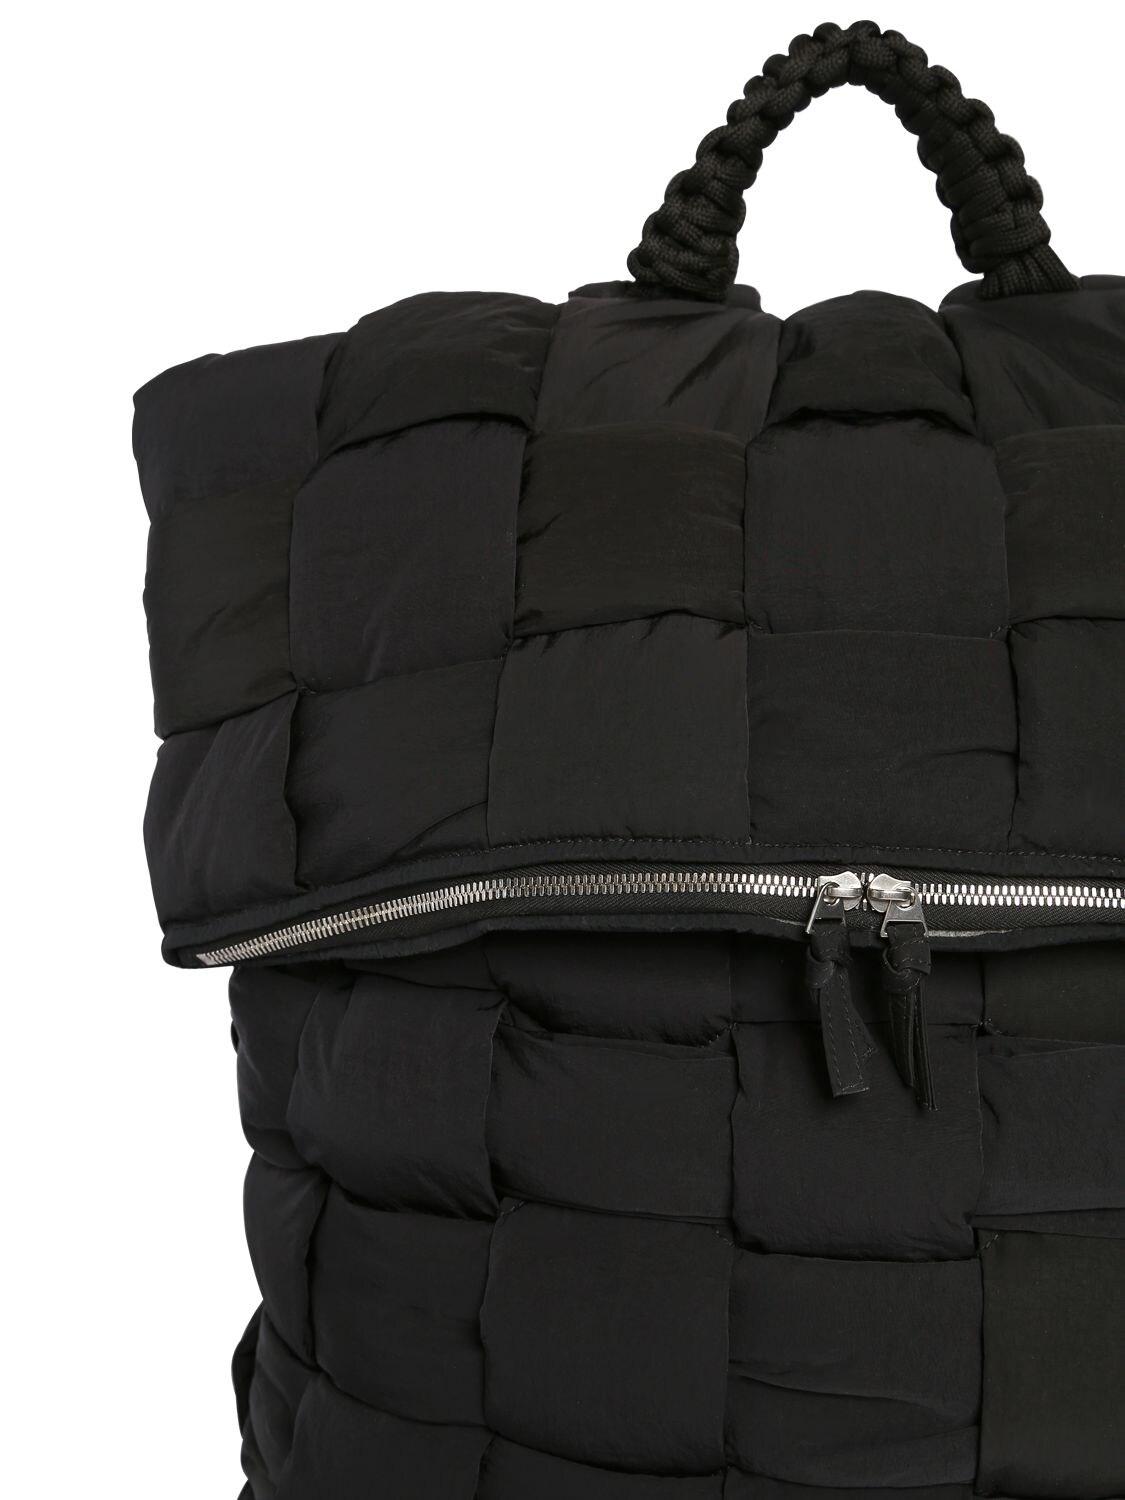 Bottega Veneta Synthetic The Padded Nylon Backpack in Black for Men - Lyst